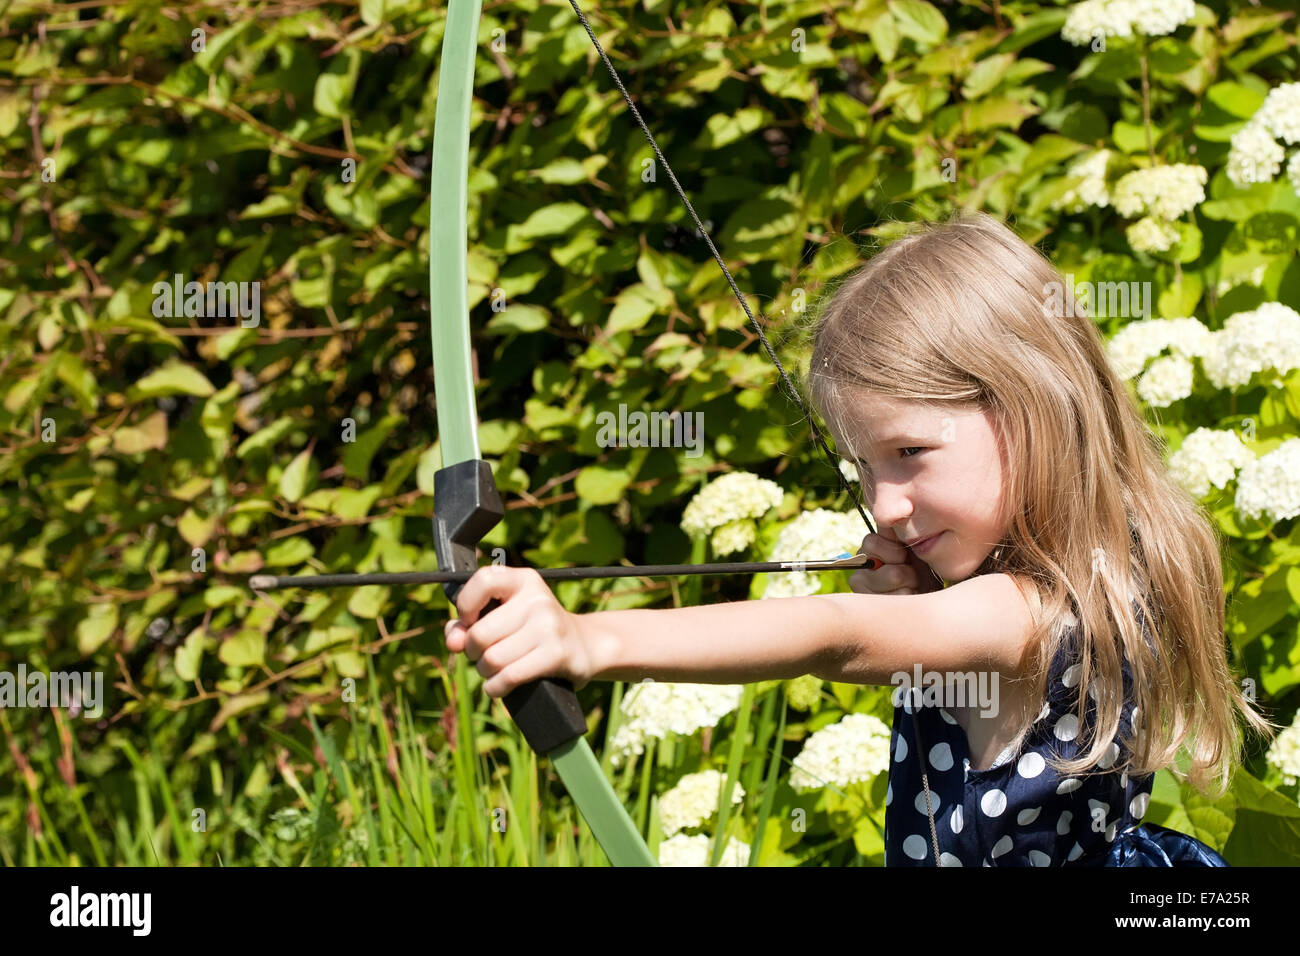 Peu caucasian girl visant flèche de big bow libre sur fond nature plein air Banque D'Images